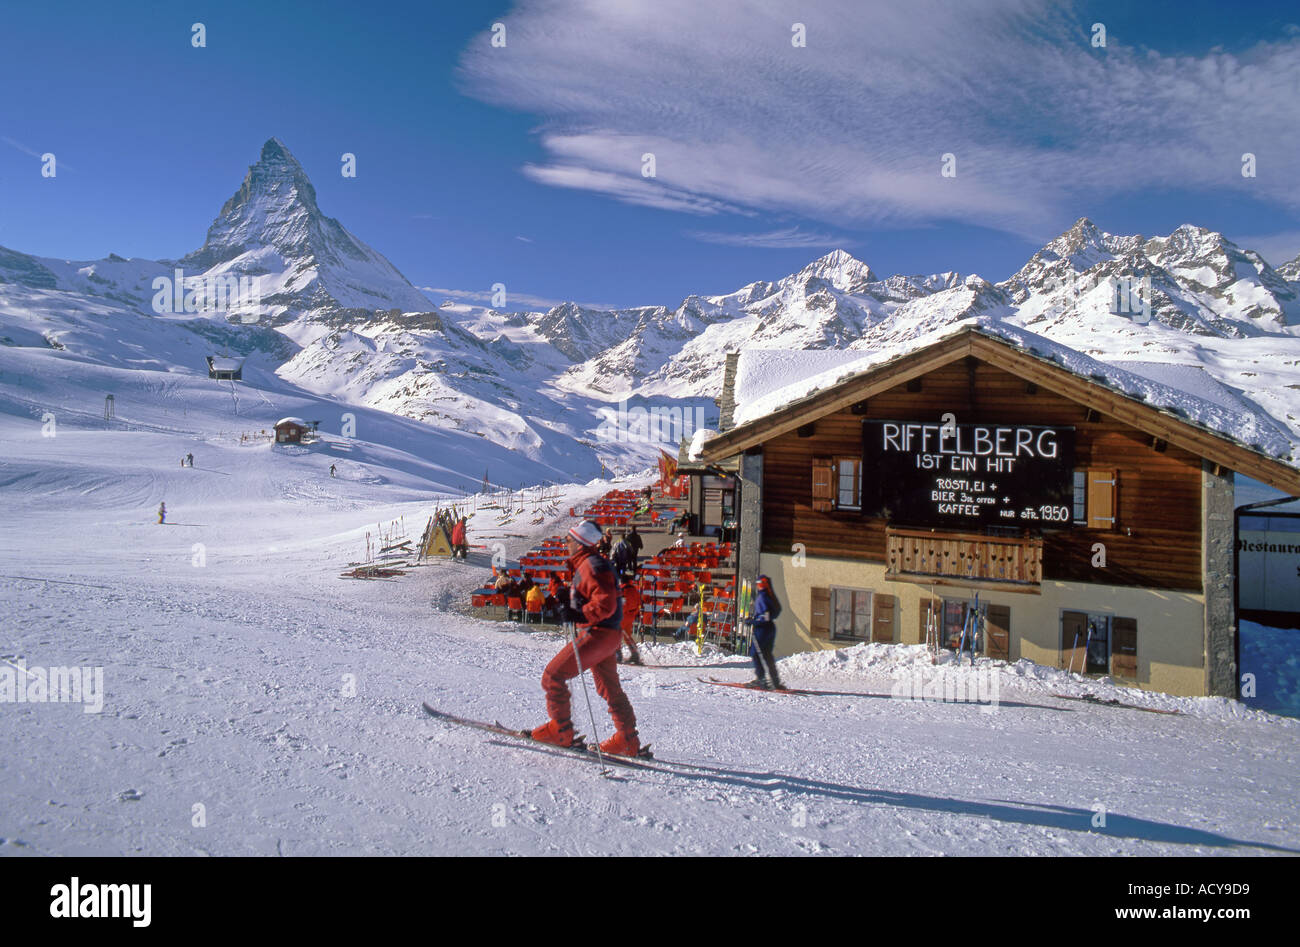 La Svizzera Vallese zermatt Alpi svizzere il Monte Cervino Riffelberg Gorner glacier sciatore Foto Stock